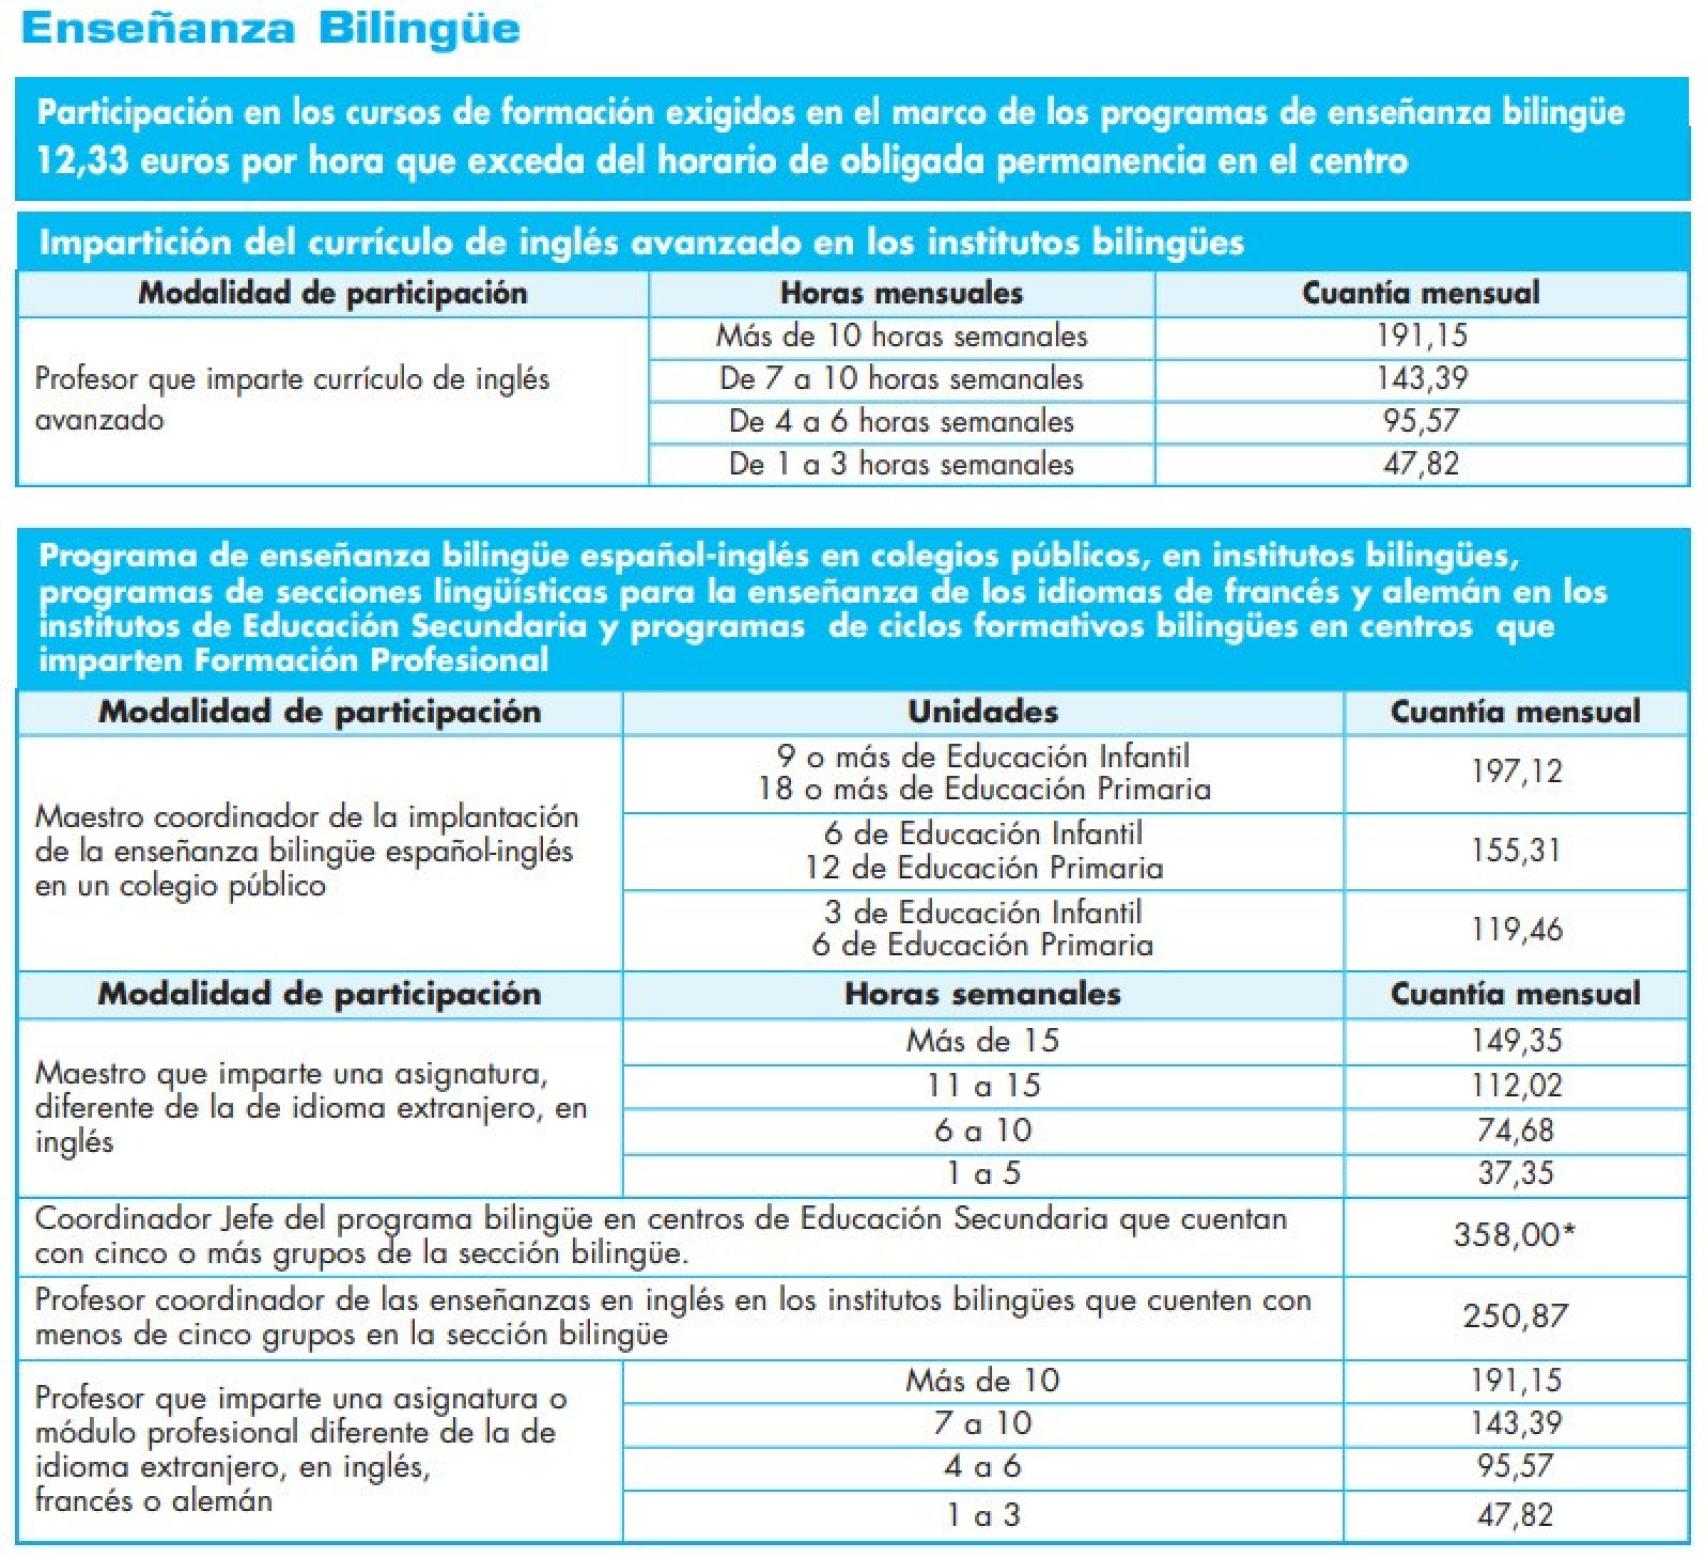 Tabla de retribuciones salariales por enseñanza bilingüe.